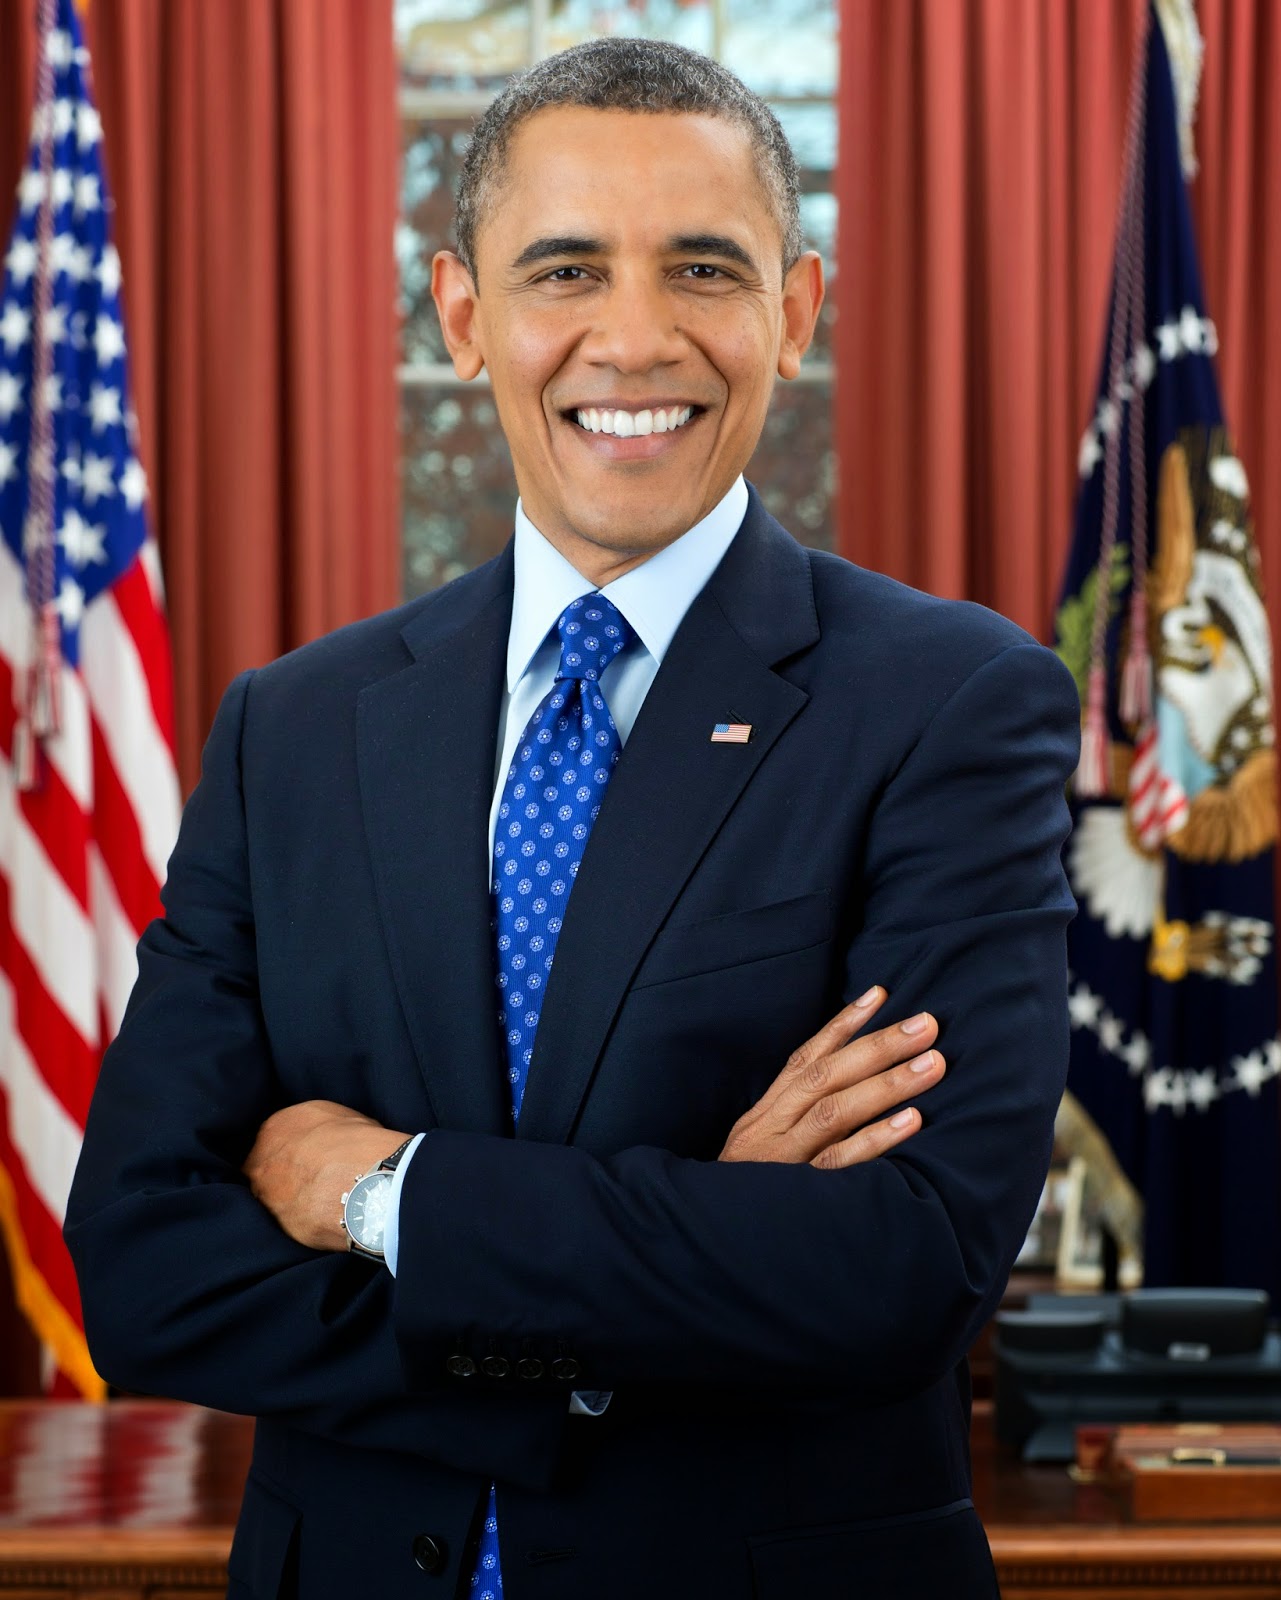 President_Barack_Obama.jpg